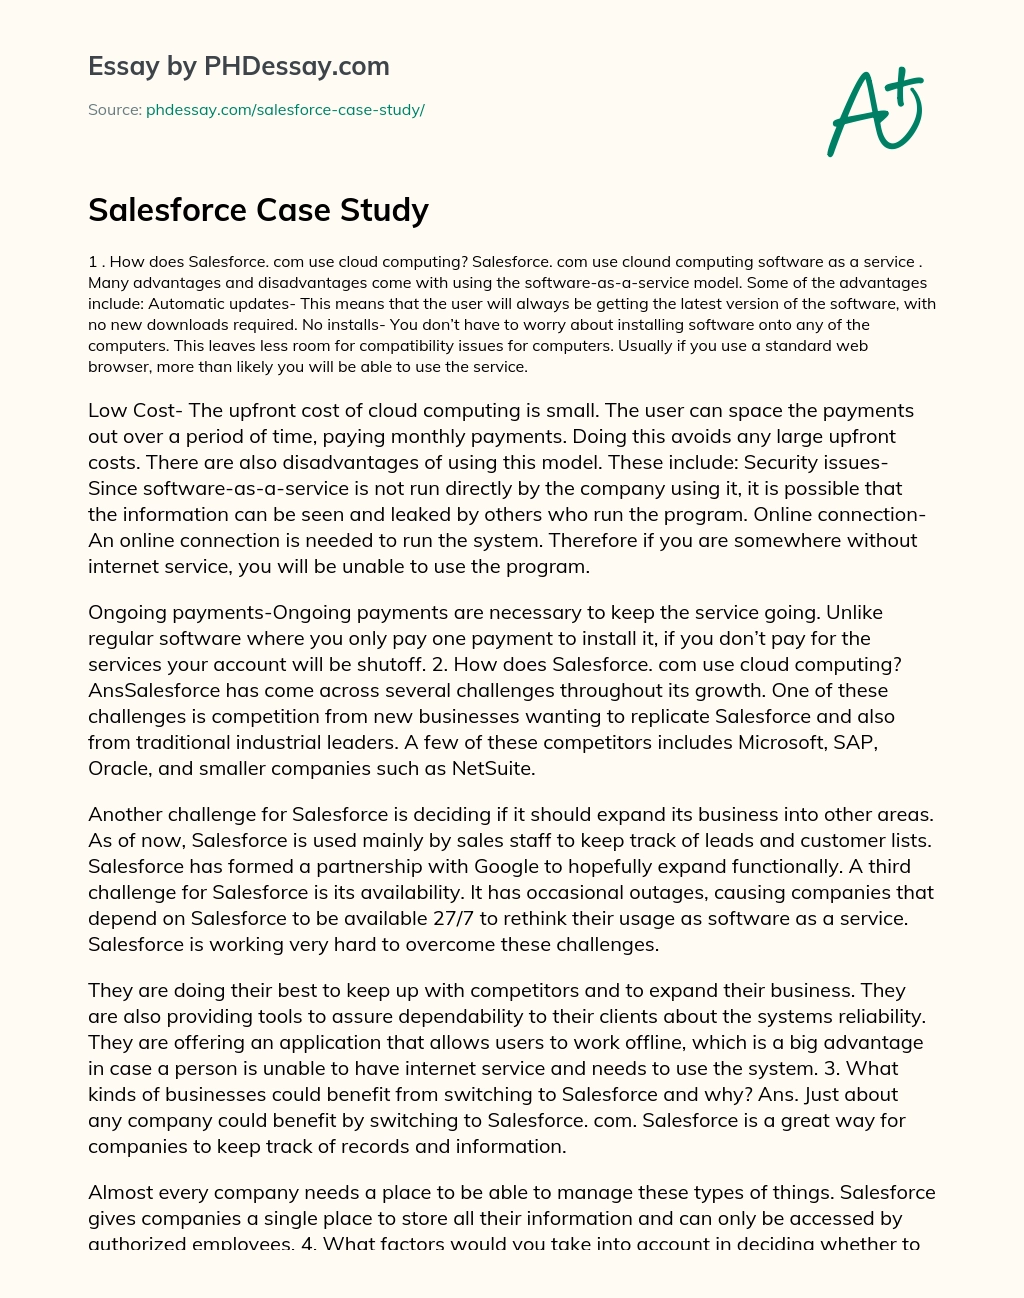 Salesforce Case Study essay